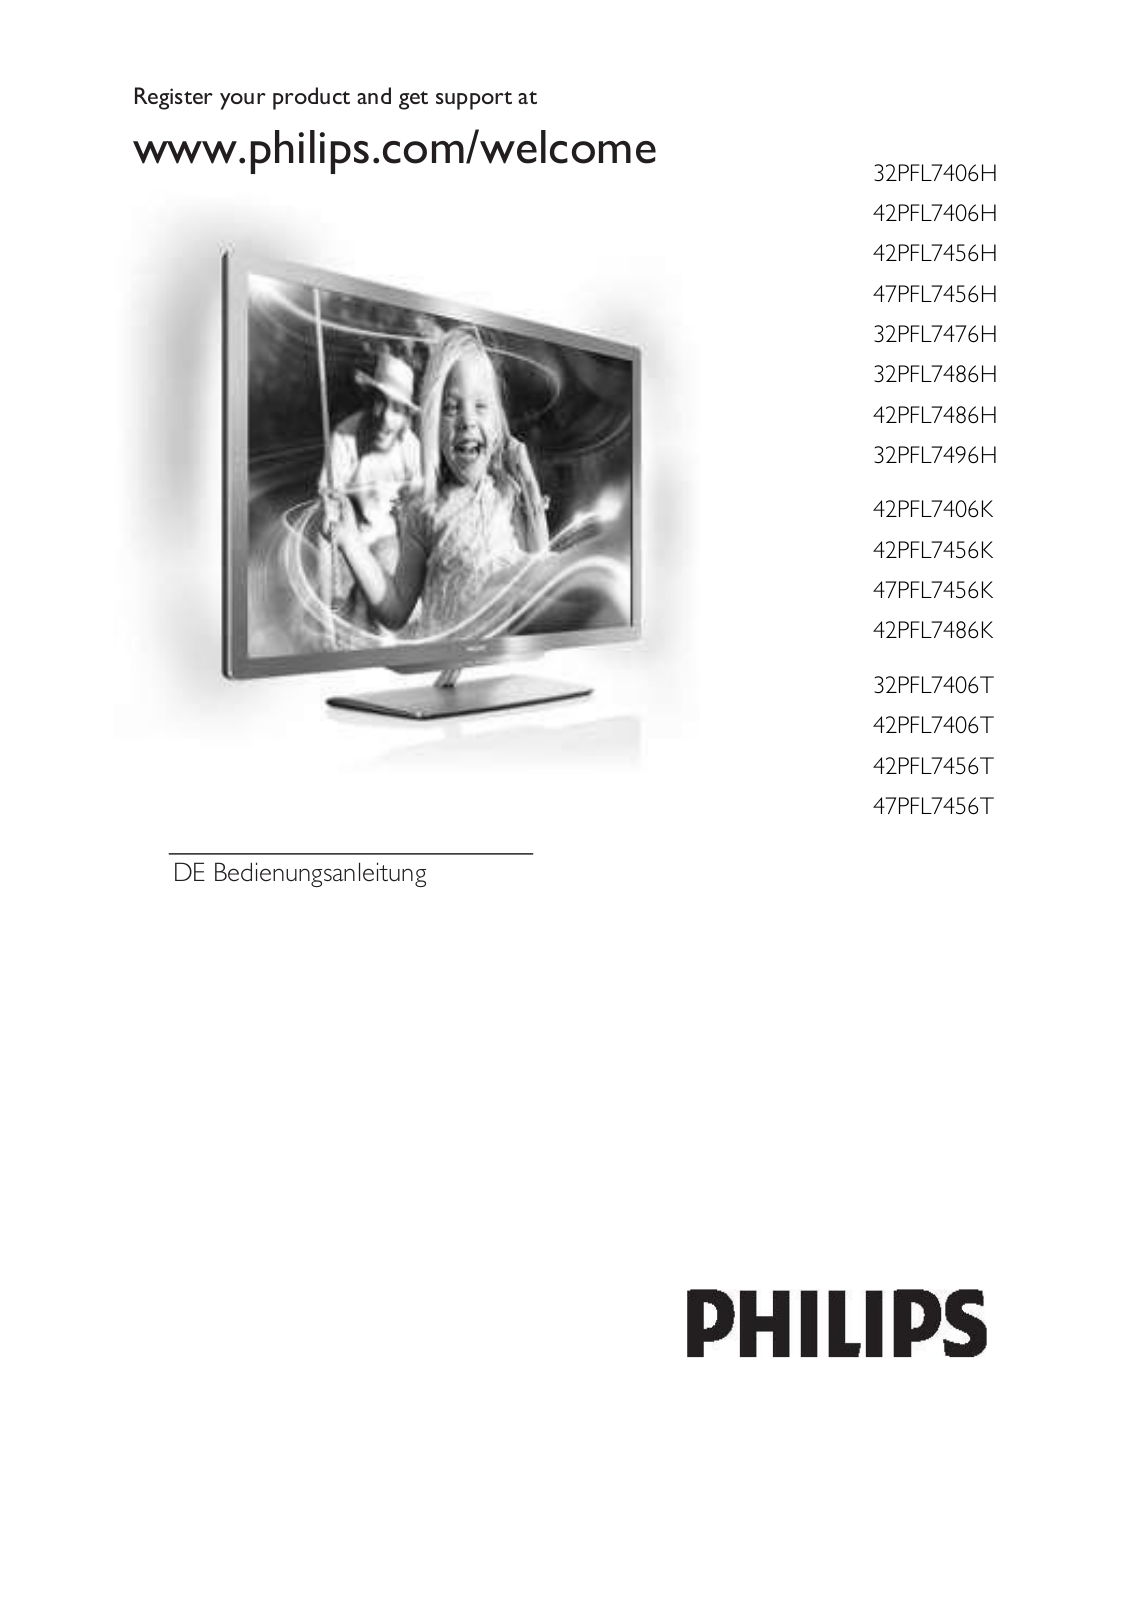 Philips 32PFL7406H, 42PFL7406H, 42PFL7456H, 47PFL7456H, 32PFL7476H User Manual